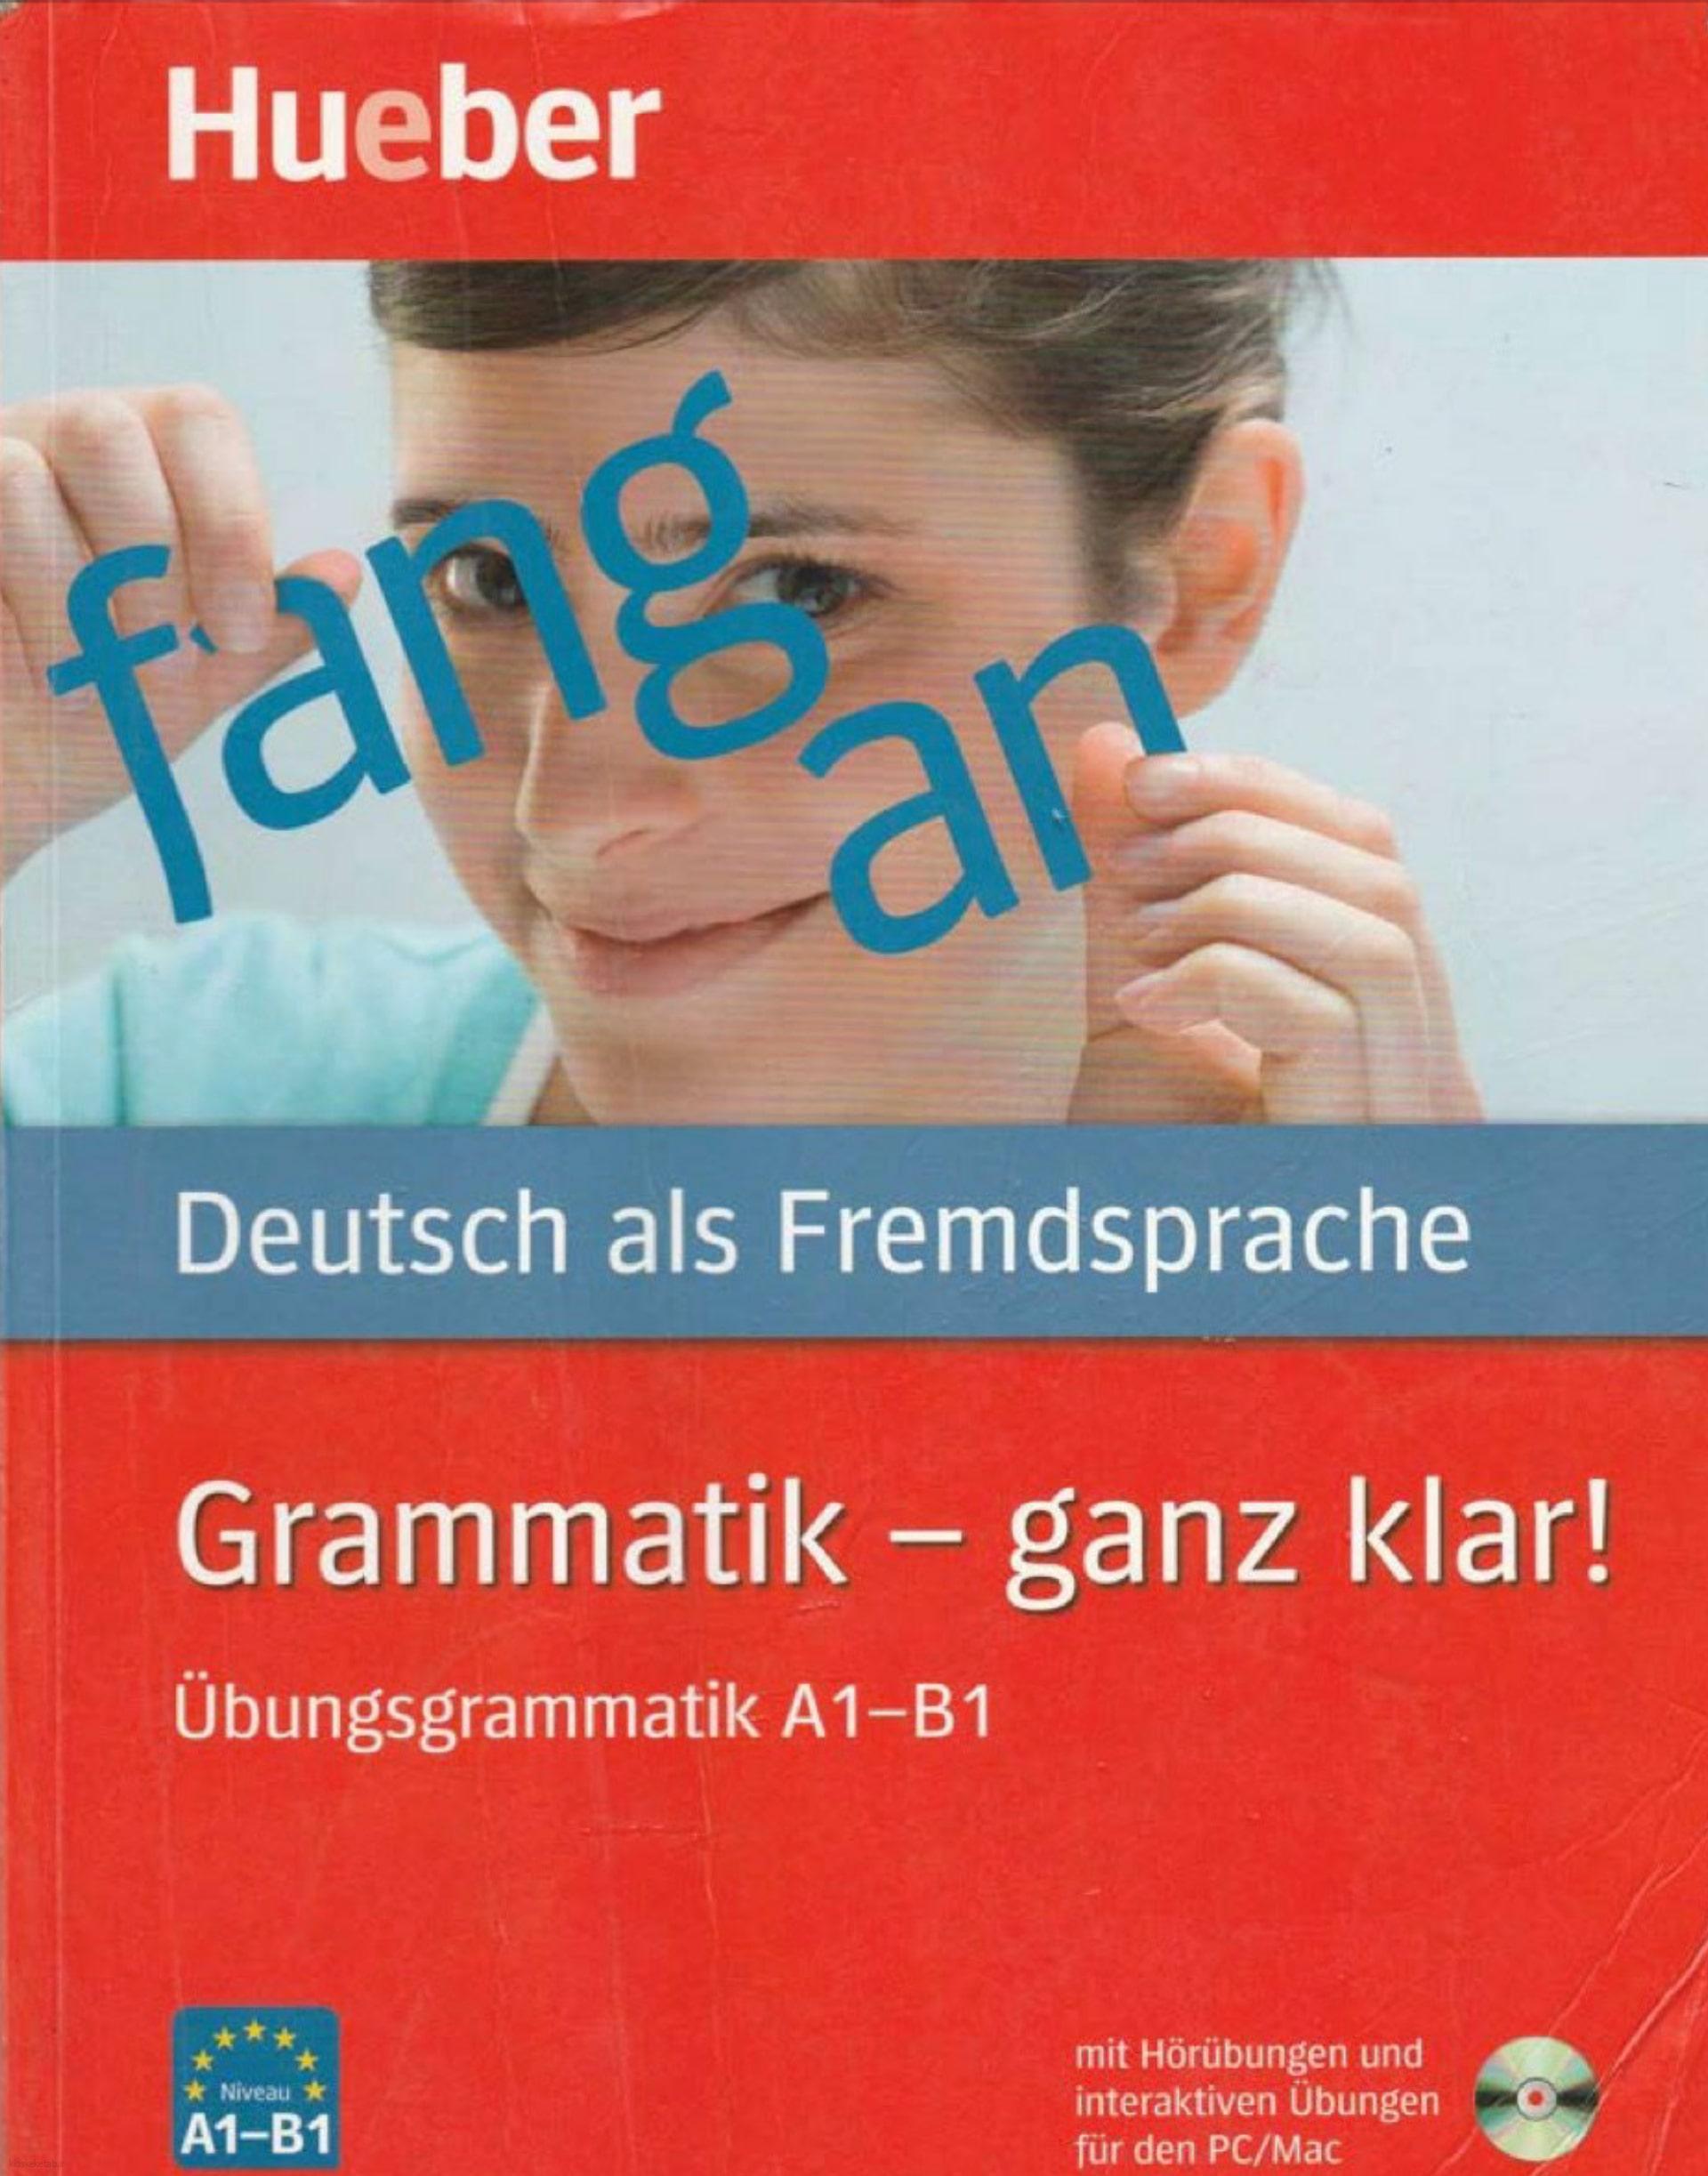 دانلود کتاب آلمانیDeutsch als Fremdsprache Grammatik Ganz klar